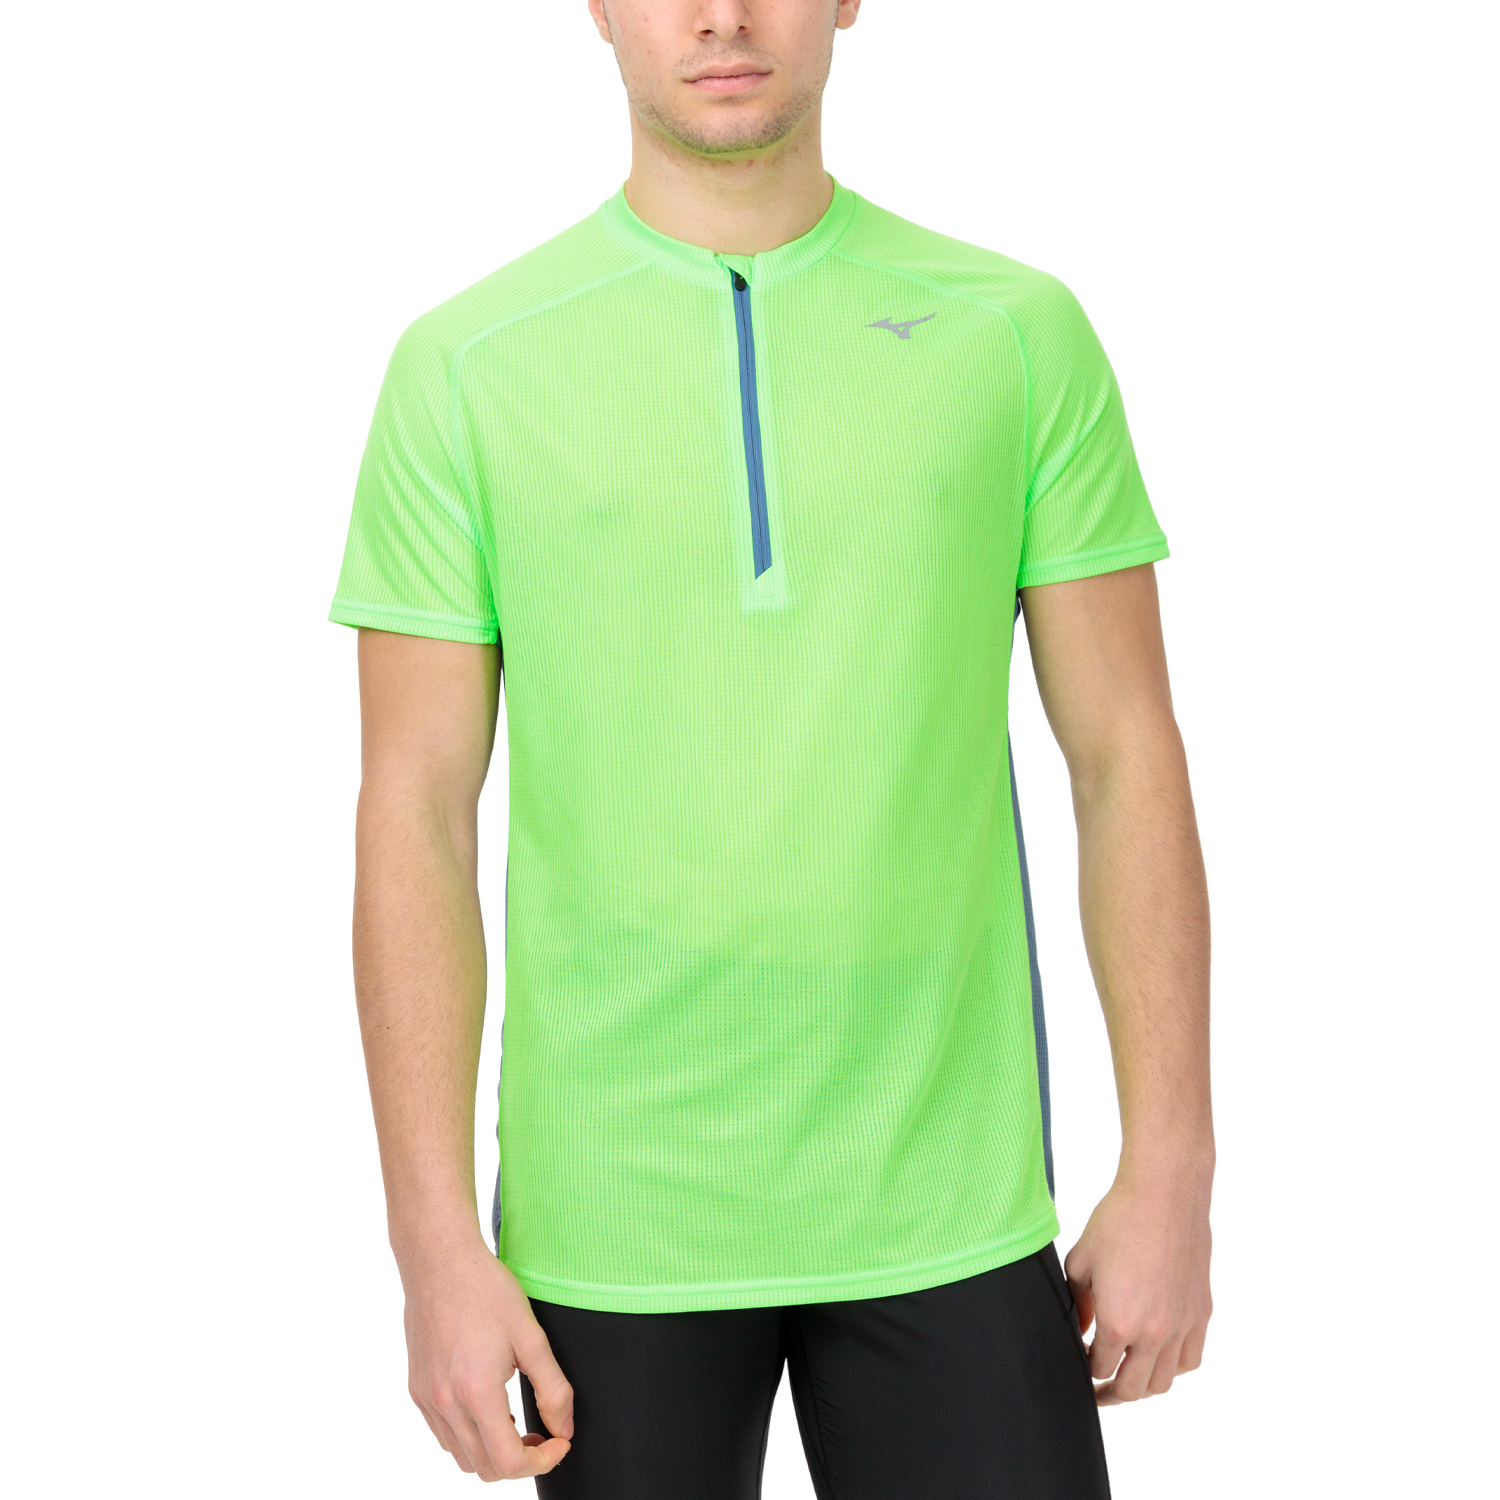 Mizuno Dryaeroflow Pro T-Shirt - Light Green